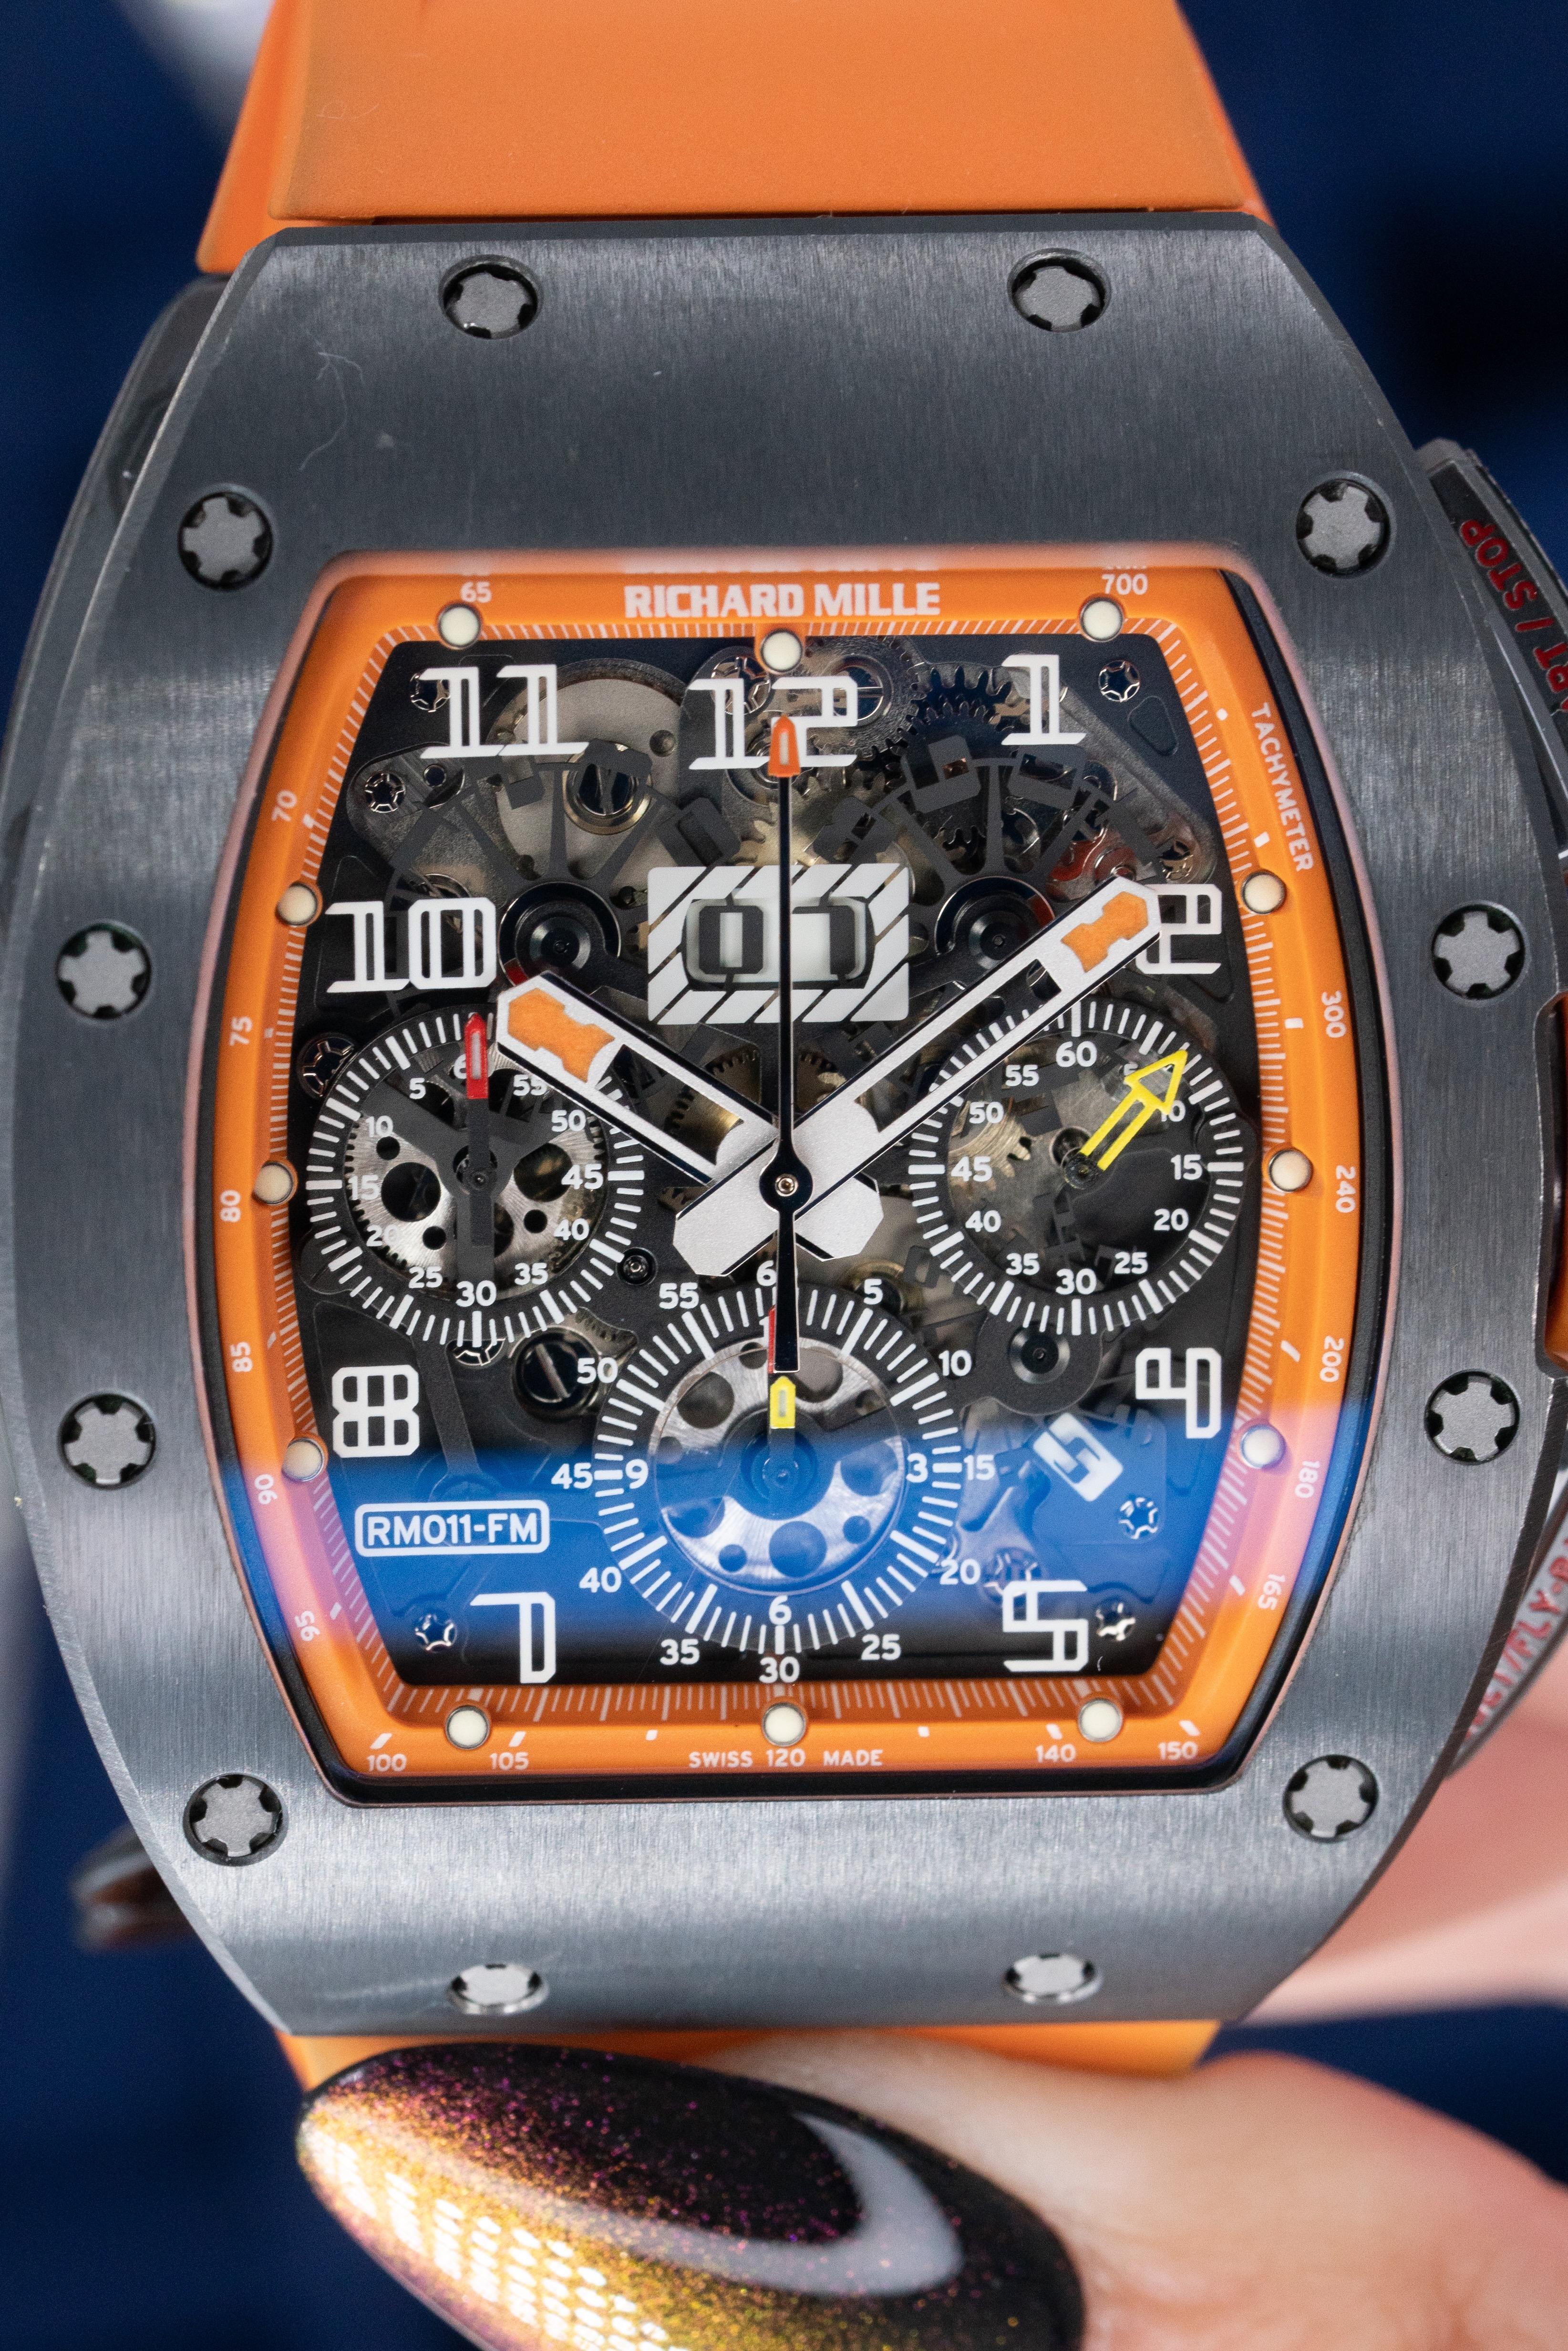 Richard Mille RM011-FM Titanium Orange Storm Watch For Sale 2